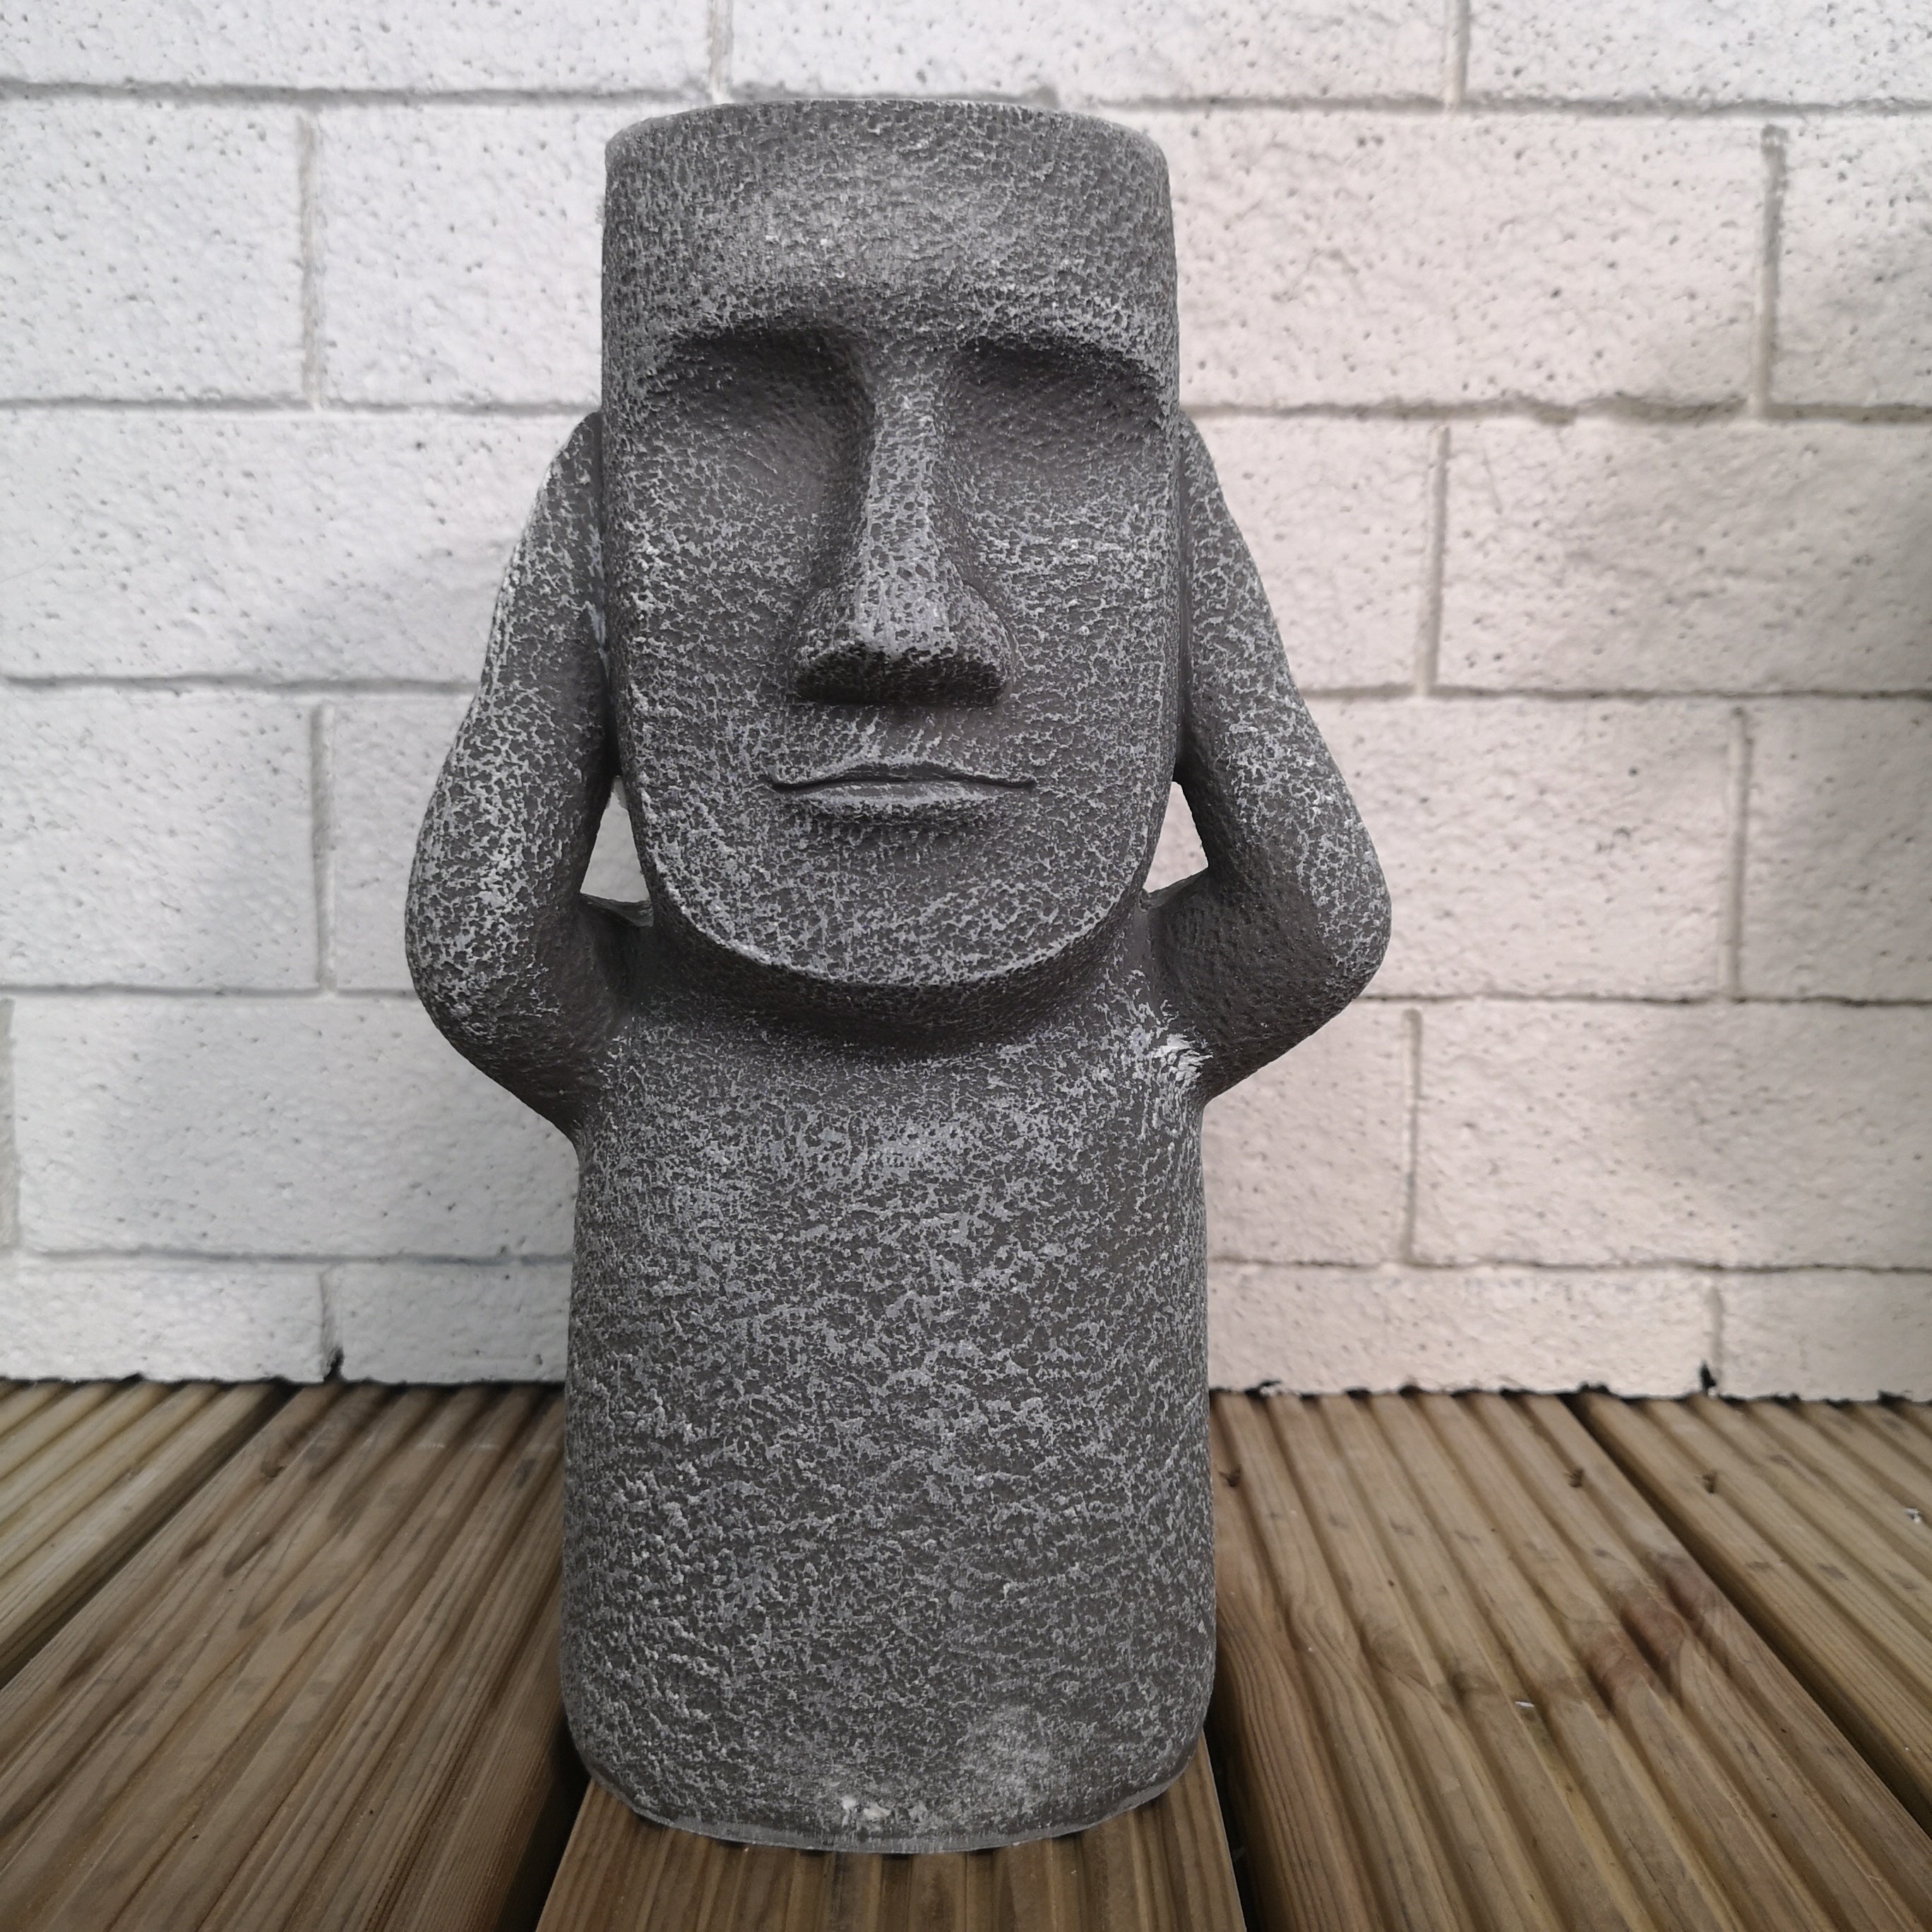 3 x 30cm Easter Island Speak See Hear No Evil Garden Patio Decoration Sculptures Plant Pots